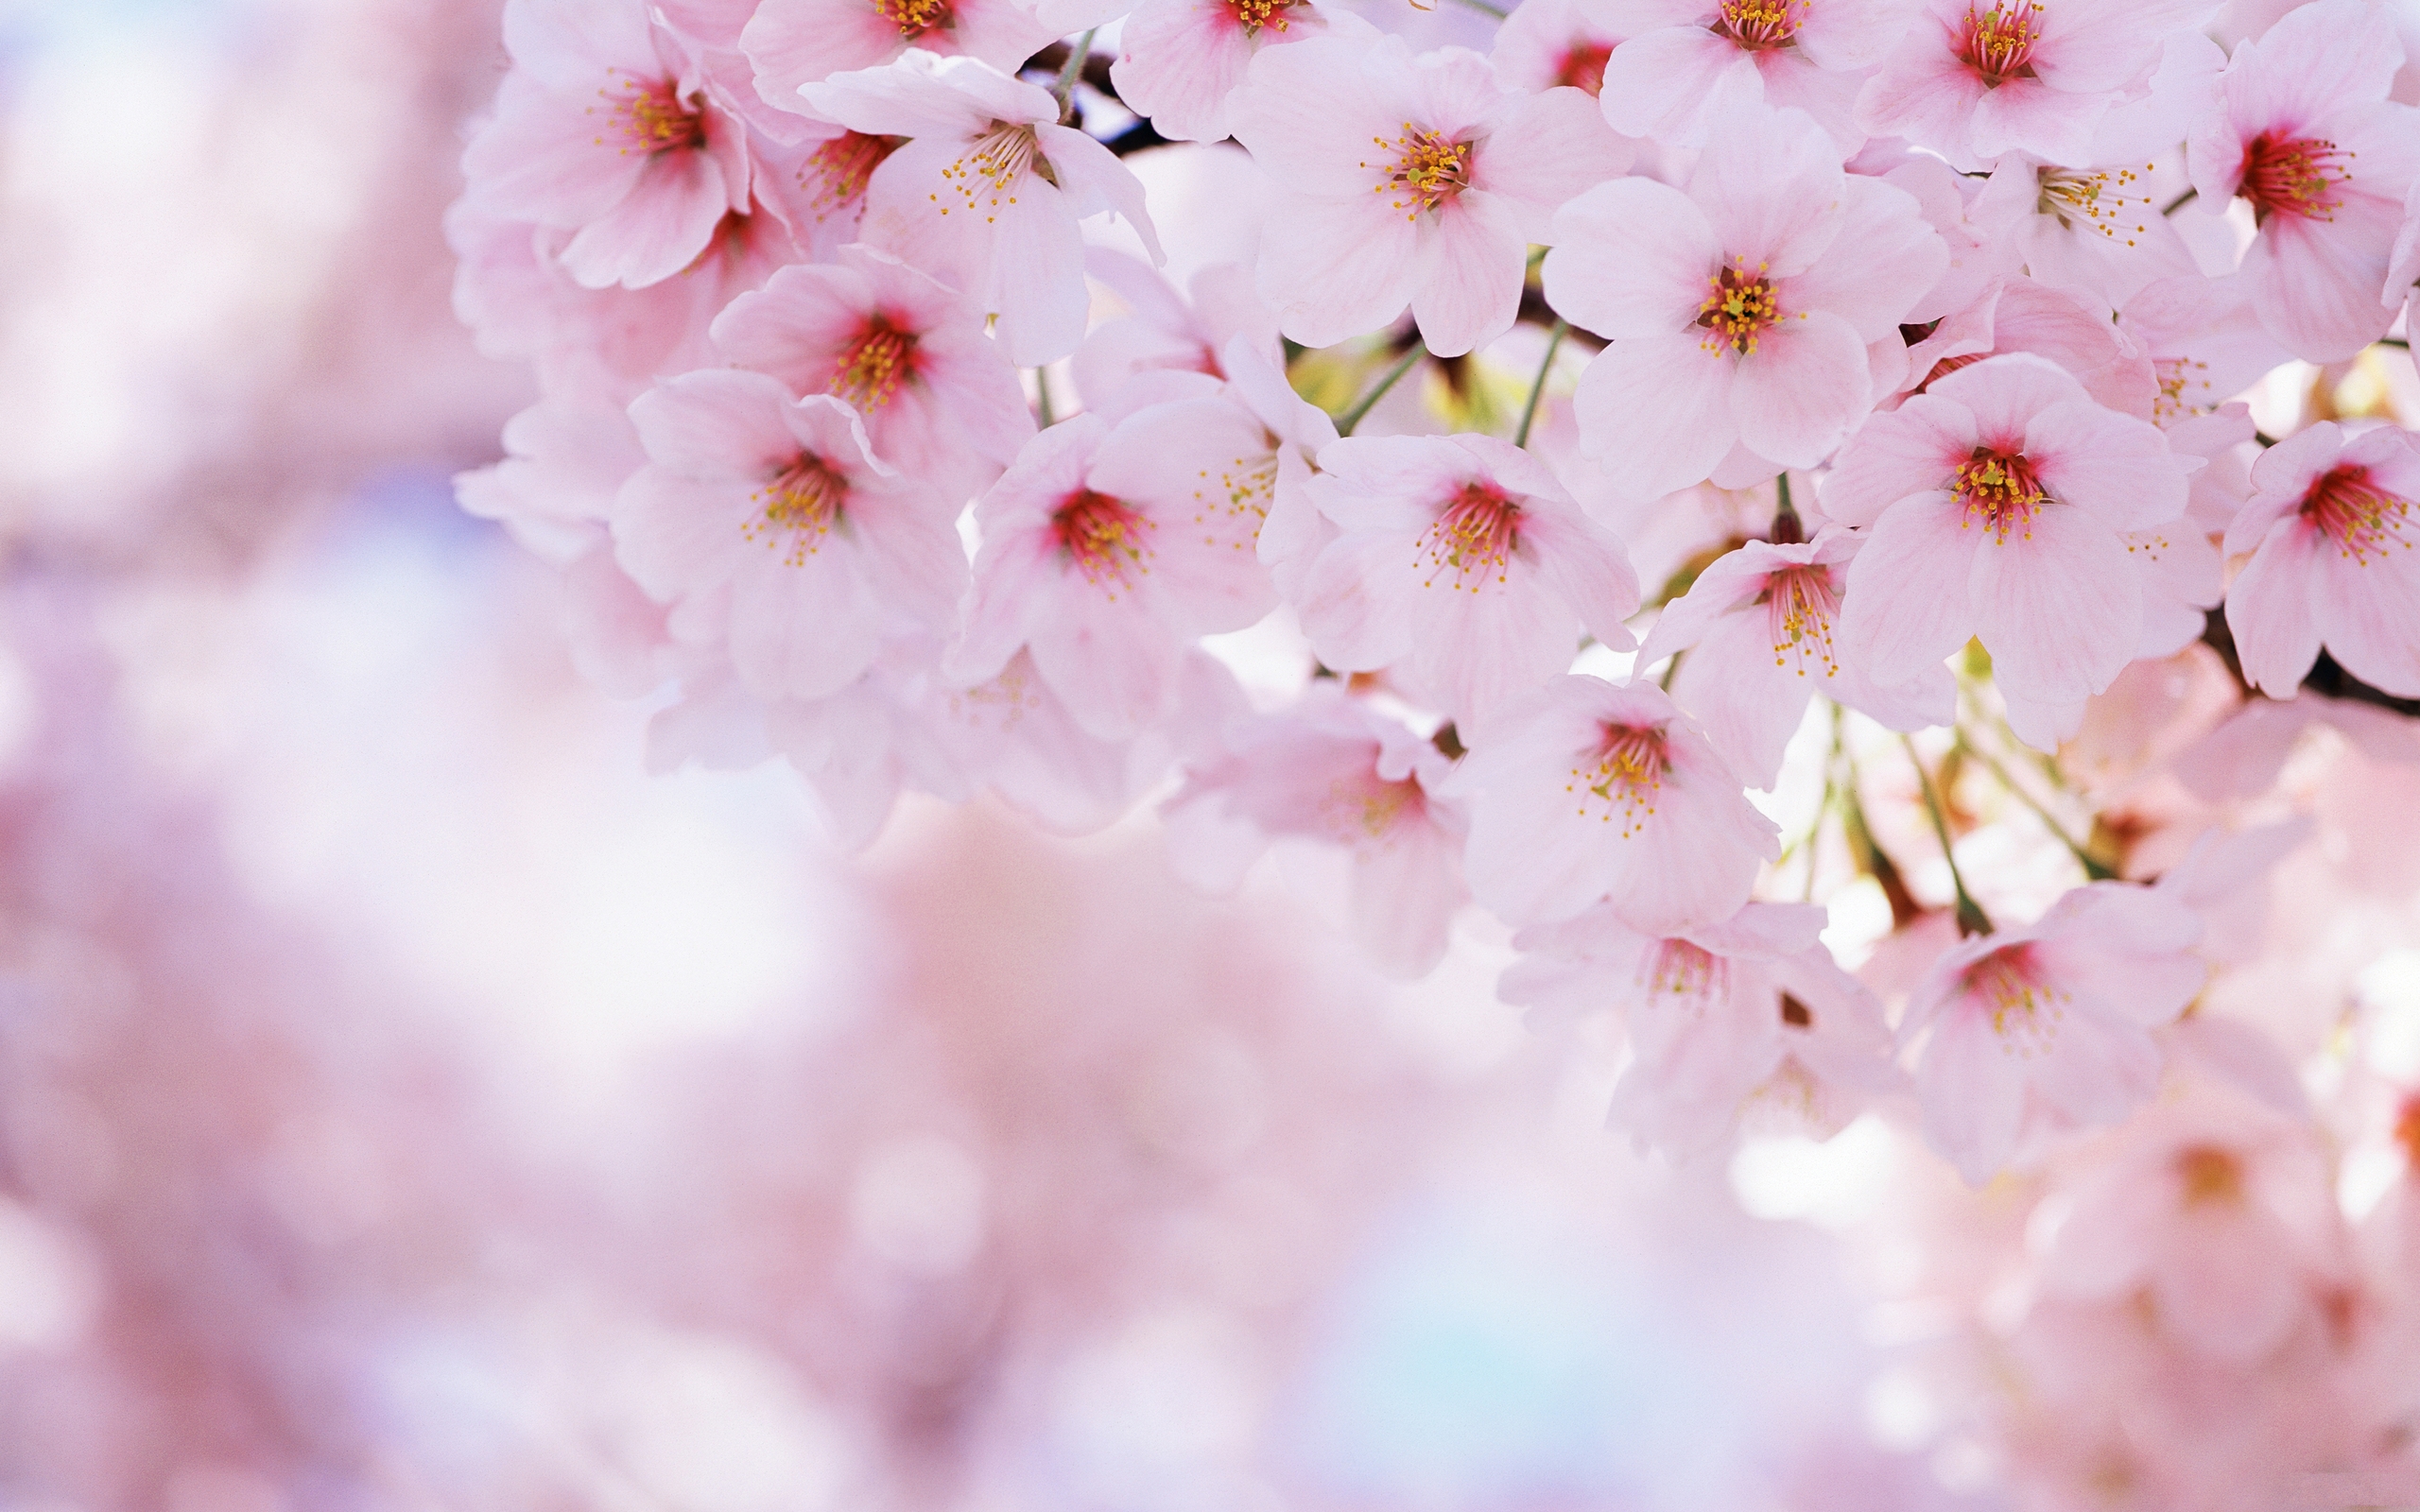 Bạn yêu thích bức hình Blossom đầy ấn tượng và muốn sử dụng nó làm hình nền của mình? Hãy tìm kiếm những hình nền HD đẹp nhất về loại hình nền này và hưởng thụ cảm giác thăng hoa như được tựa vào một mùa hoa đầy sắc màu.